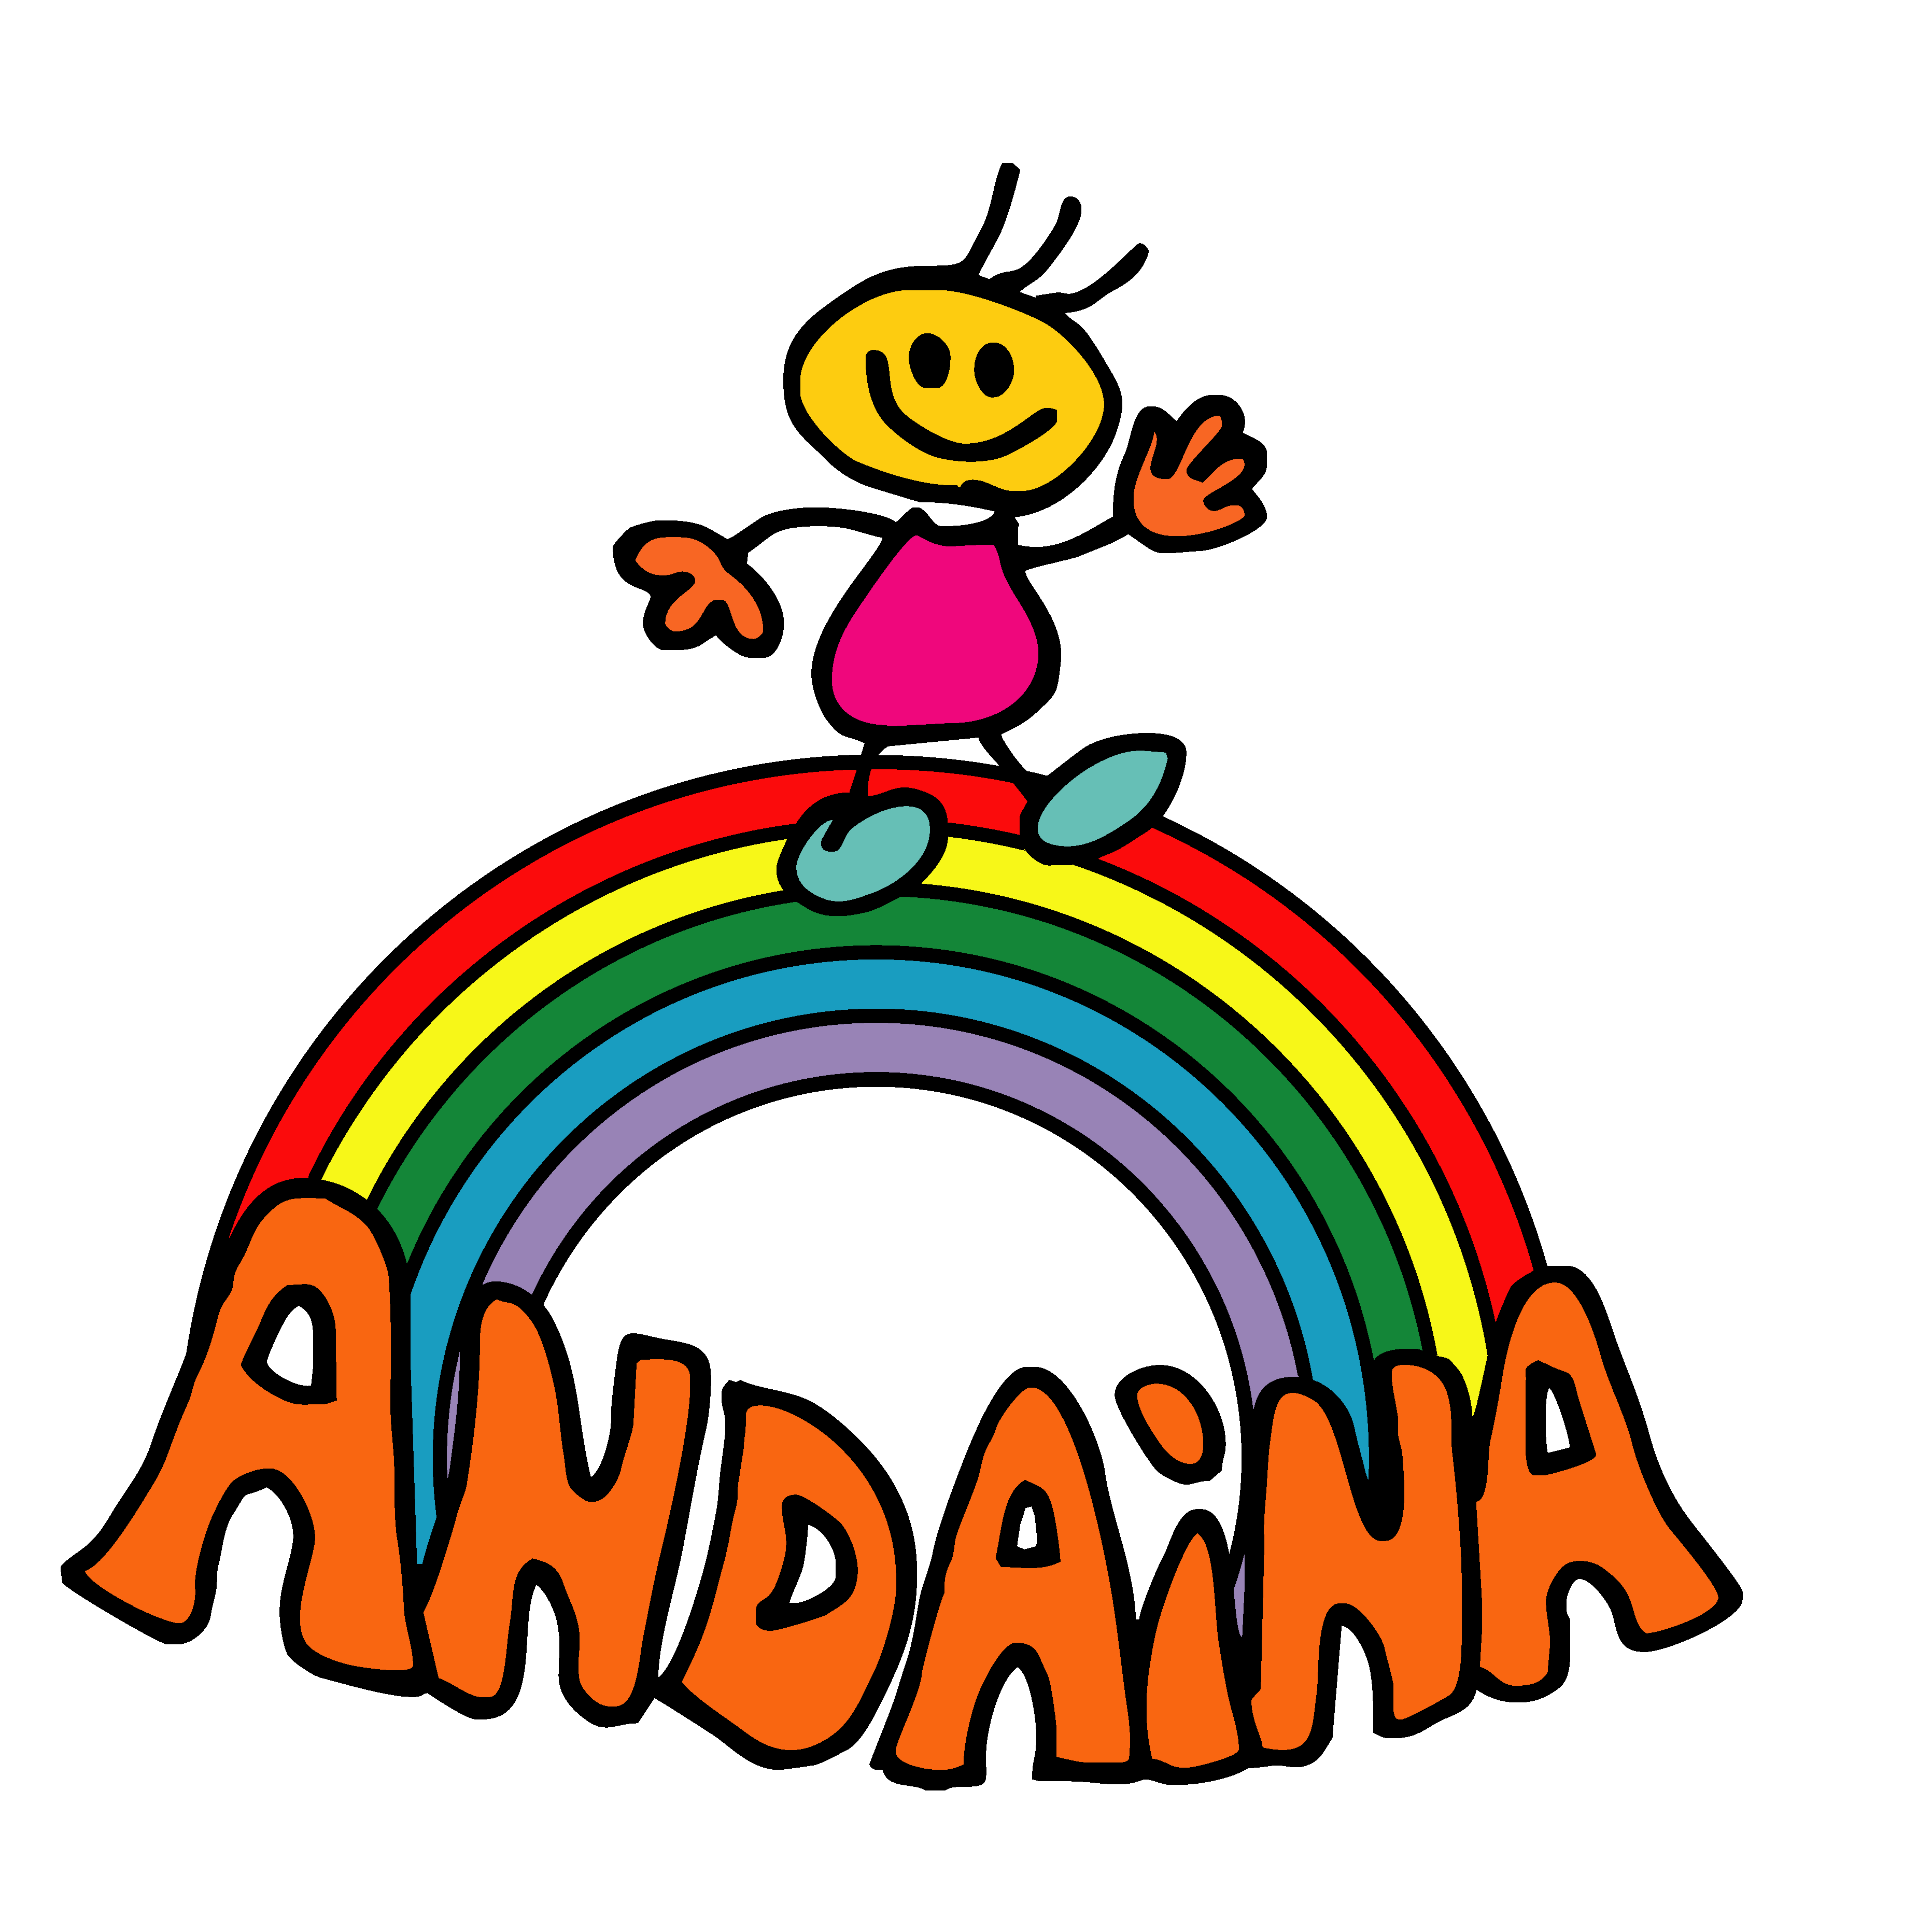 Asociación Andaina de persoas con diversidade funcional de Redondela Profile, news, ratings and communication